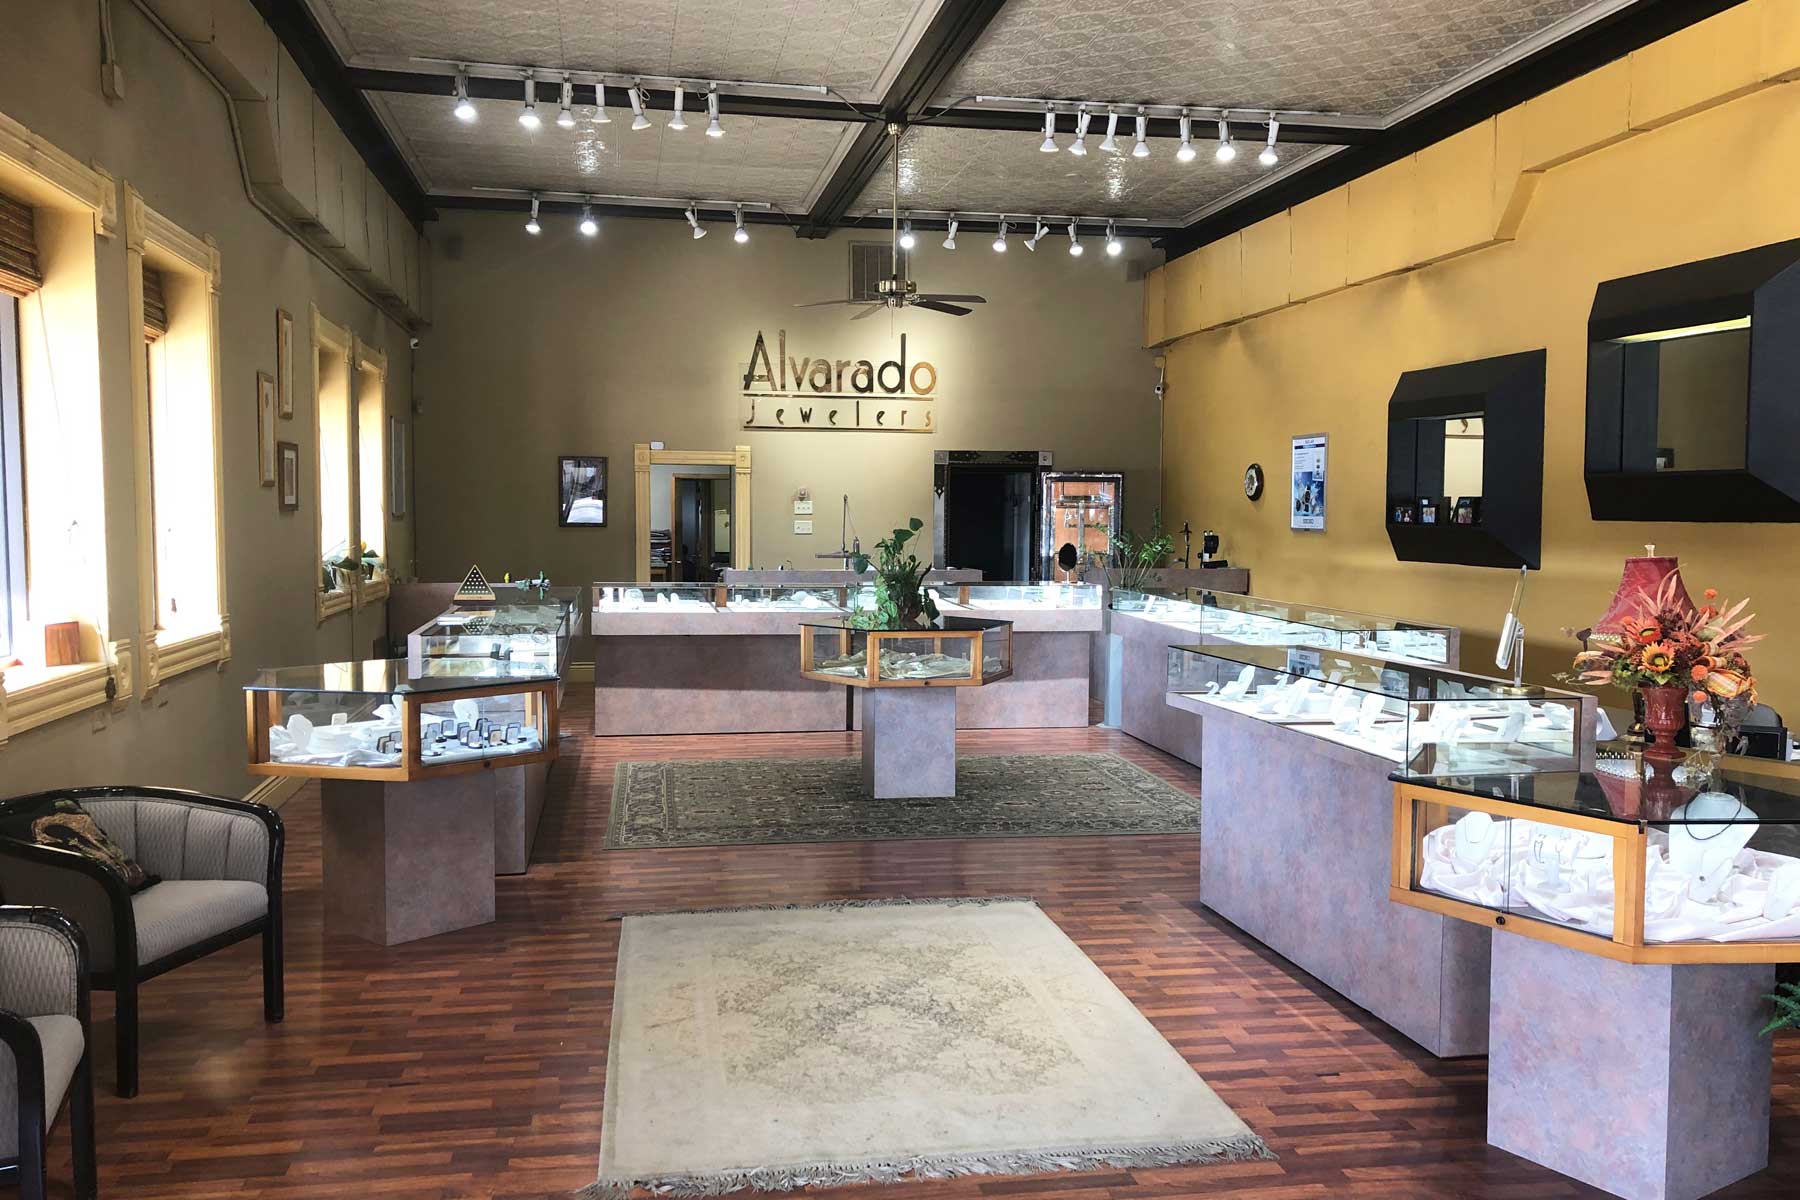 Alvarado Jewelers